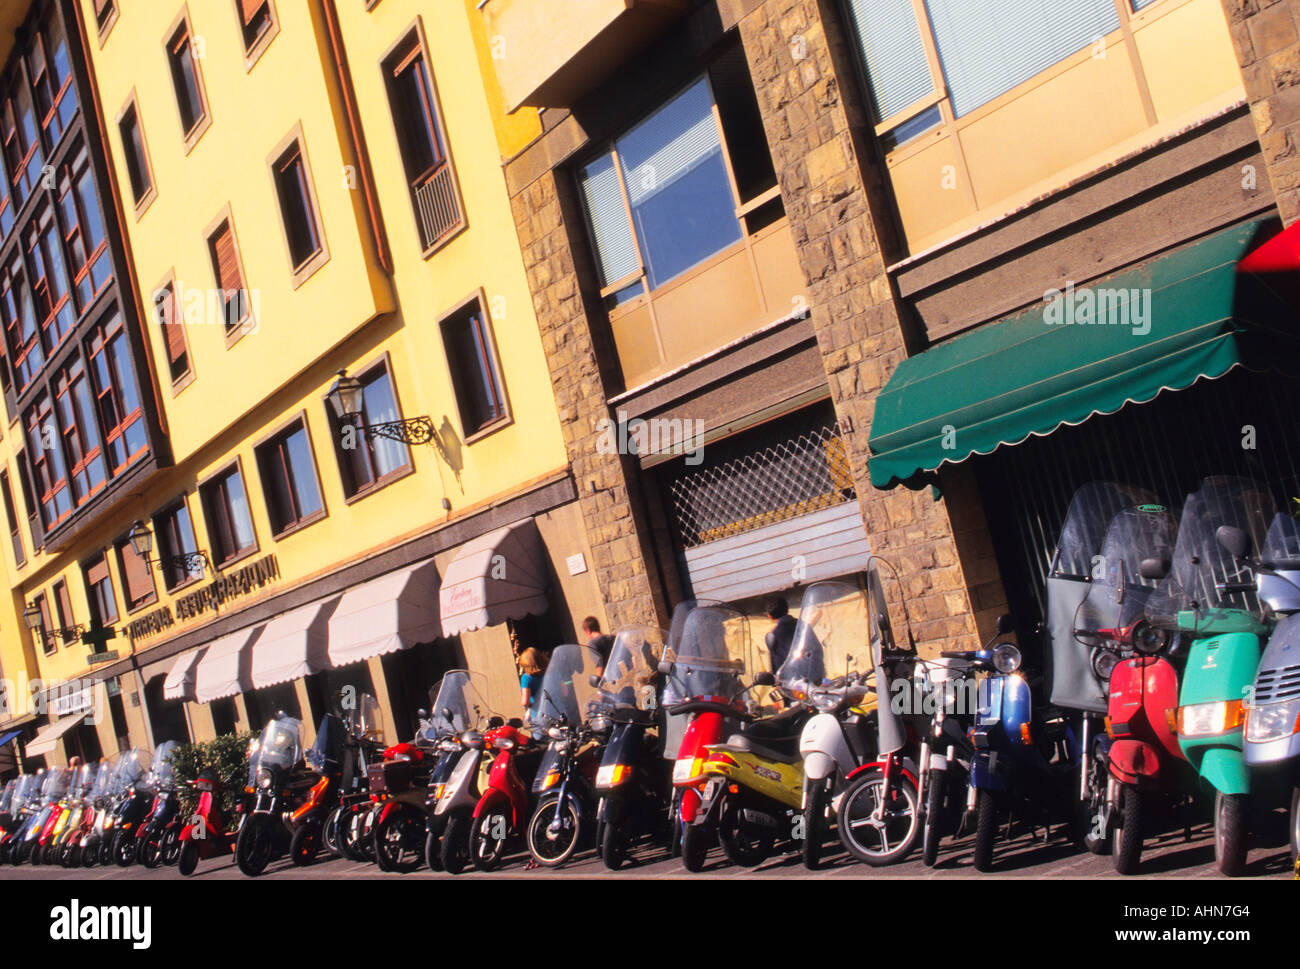 Italia Firenze Toscana motociclette parcheggiate di fila su una strada durante l'ora di pranzo in Europa Foto Stock